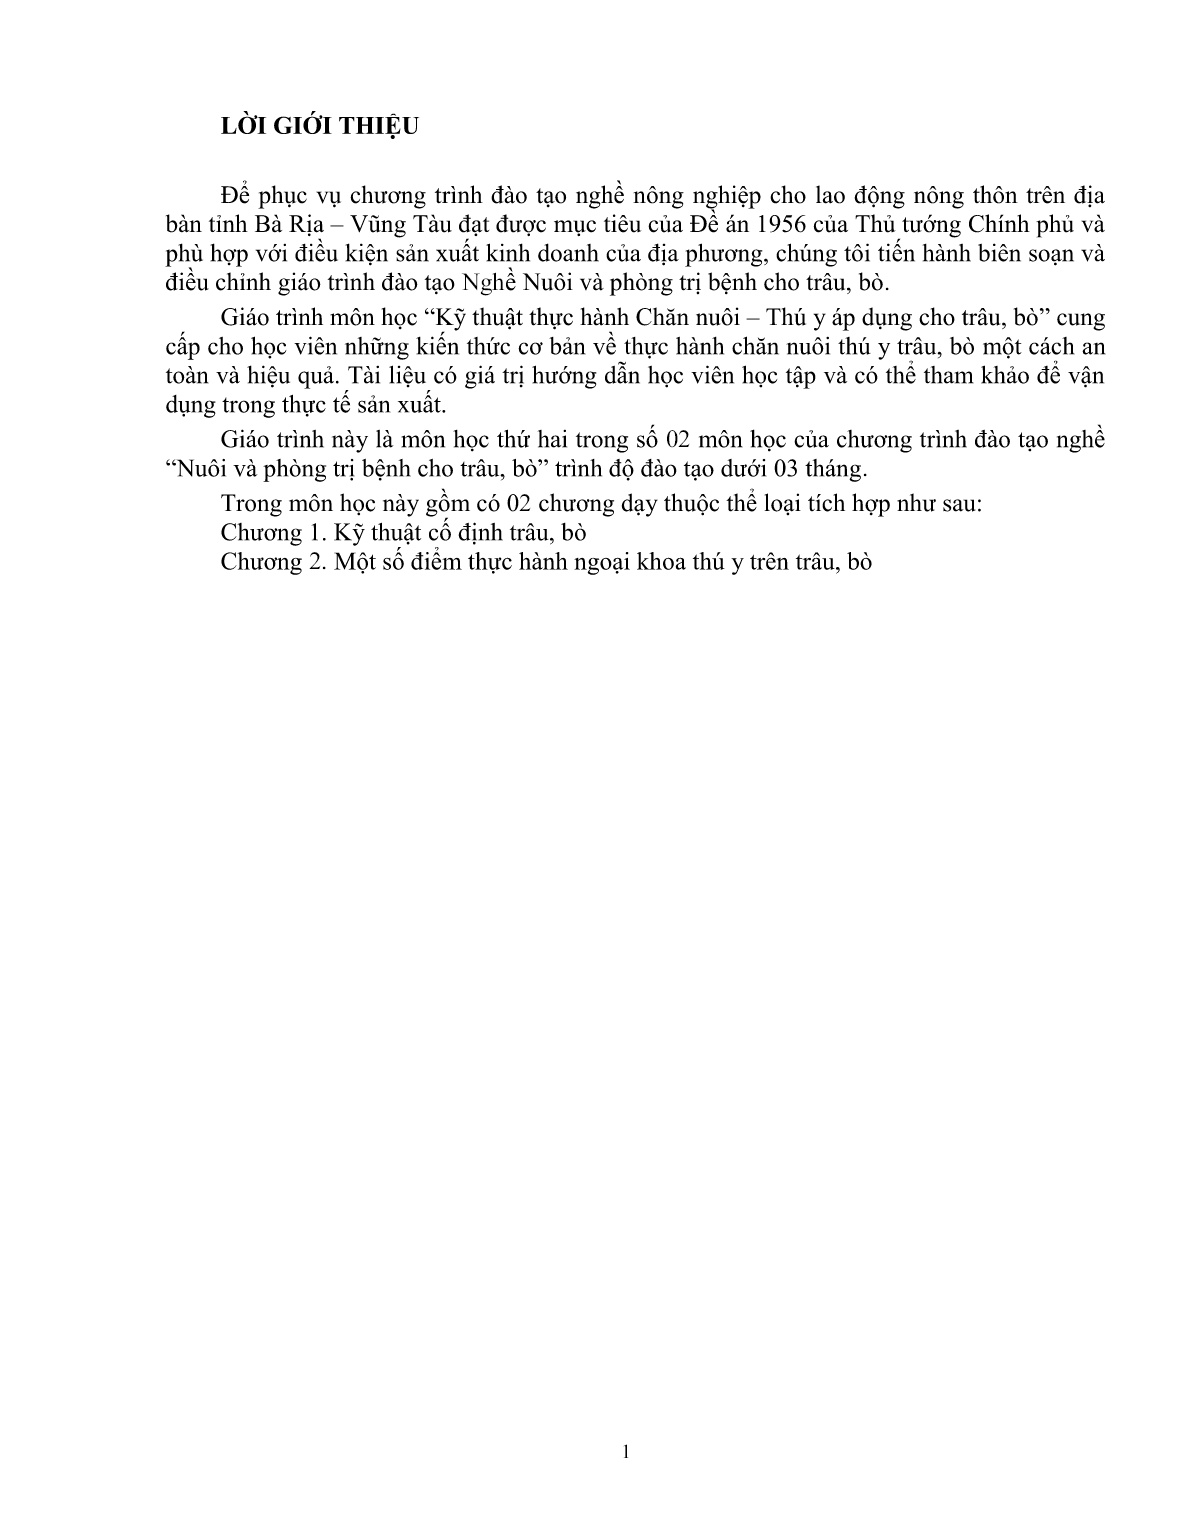 Giáo trình Kỹ thuật thực hành chăn nuôi – thú y áp dụng cho trâu, bò (Trình độ: Đào tạo dưới 3 tháng) trang 2